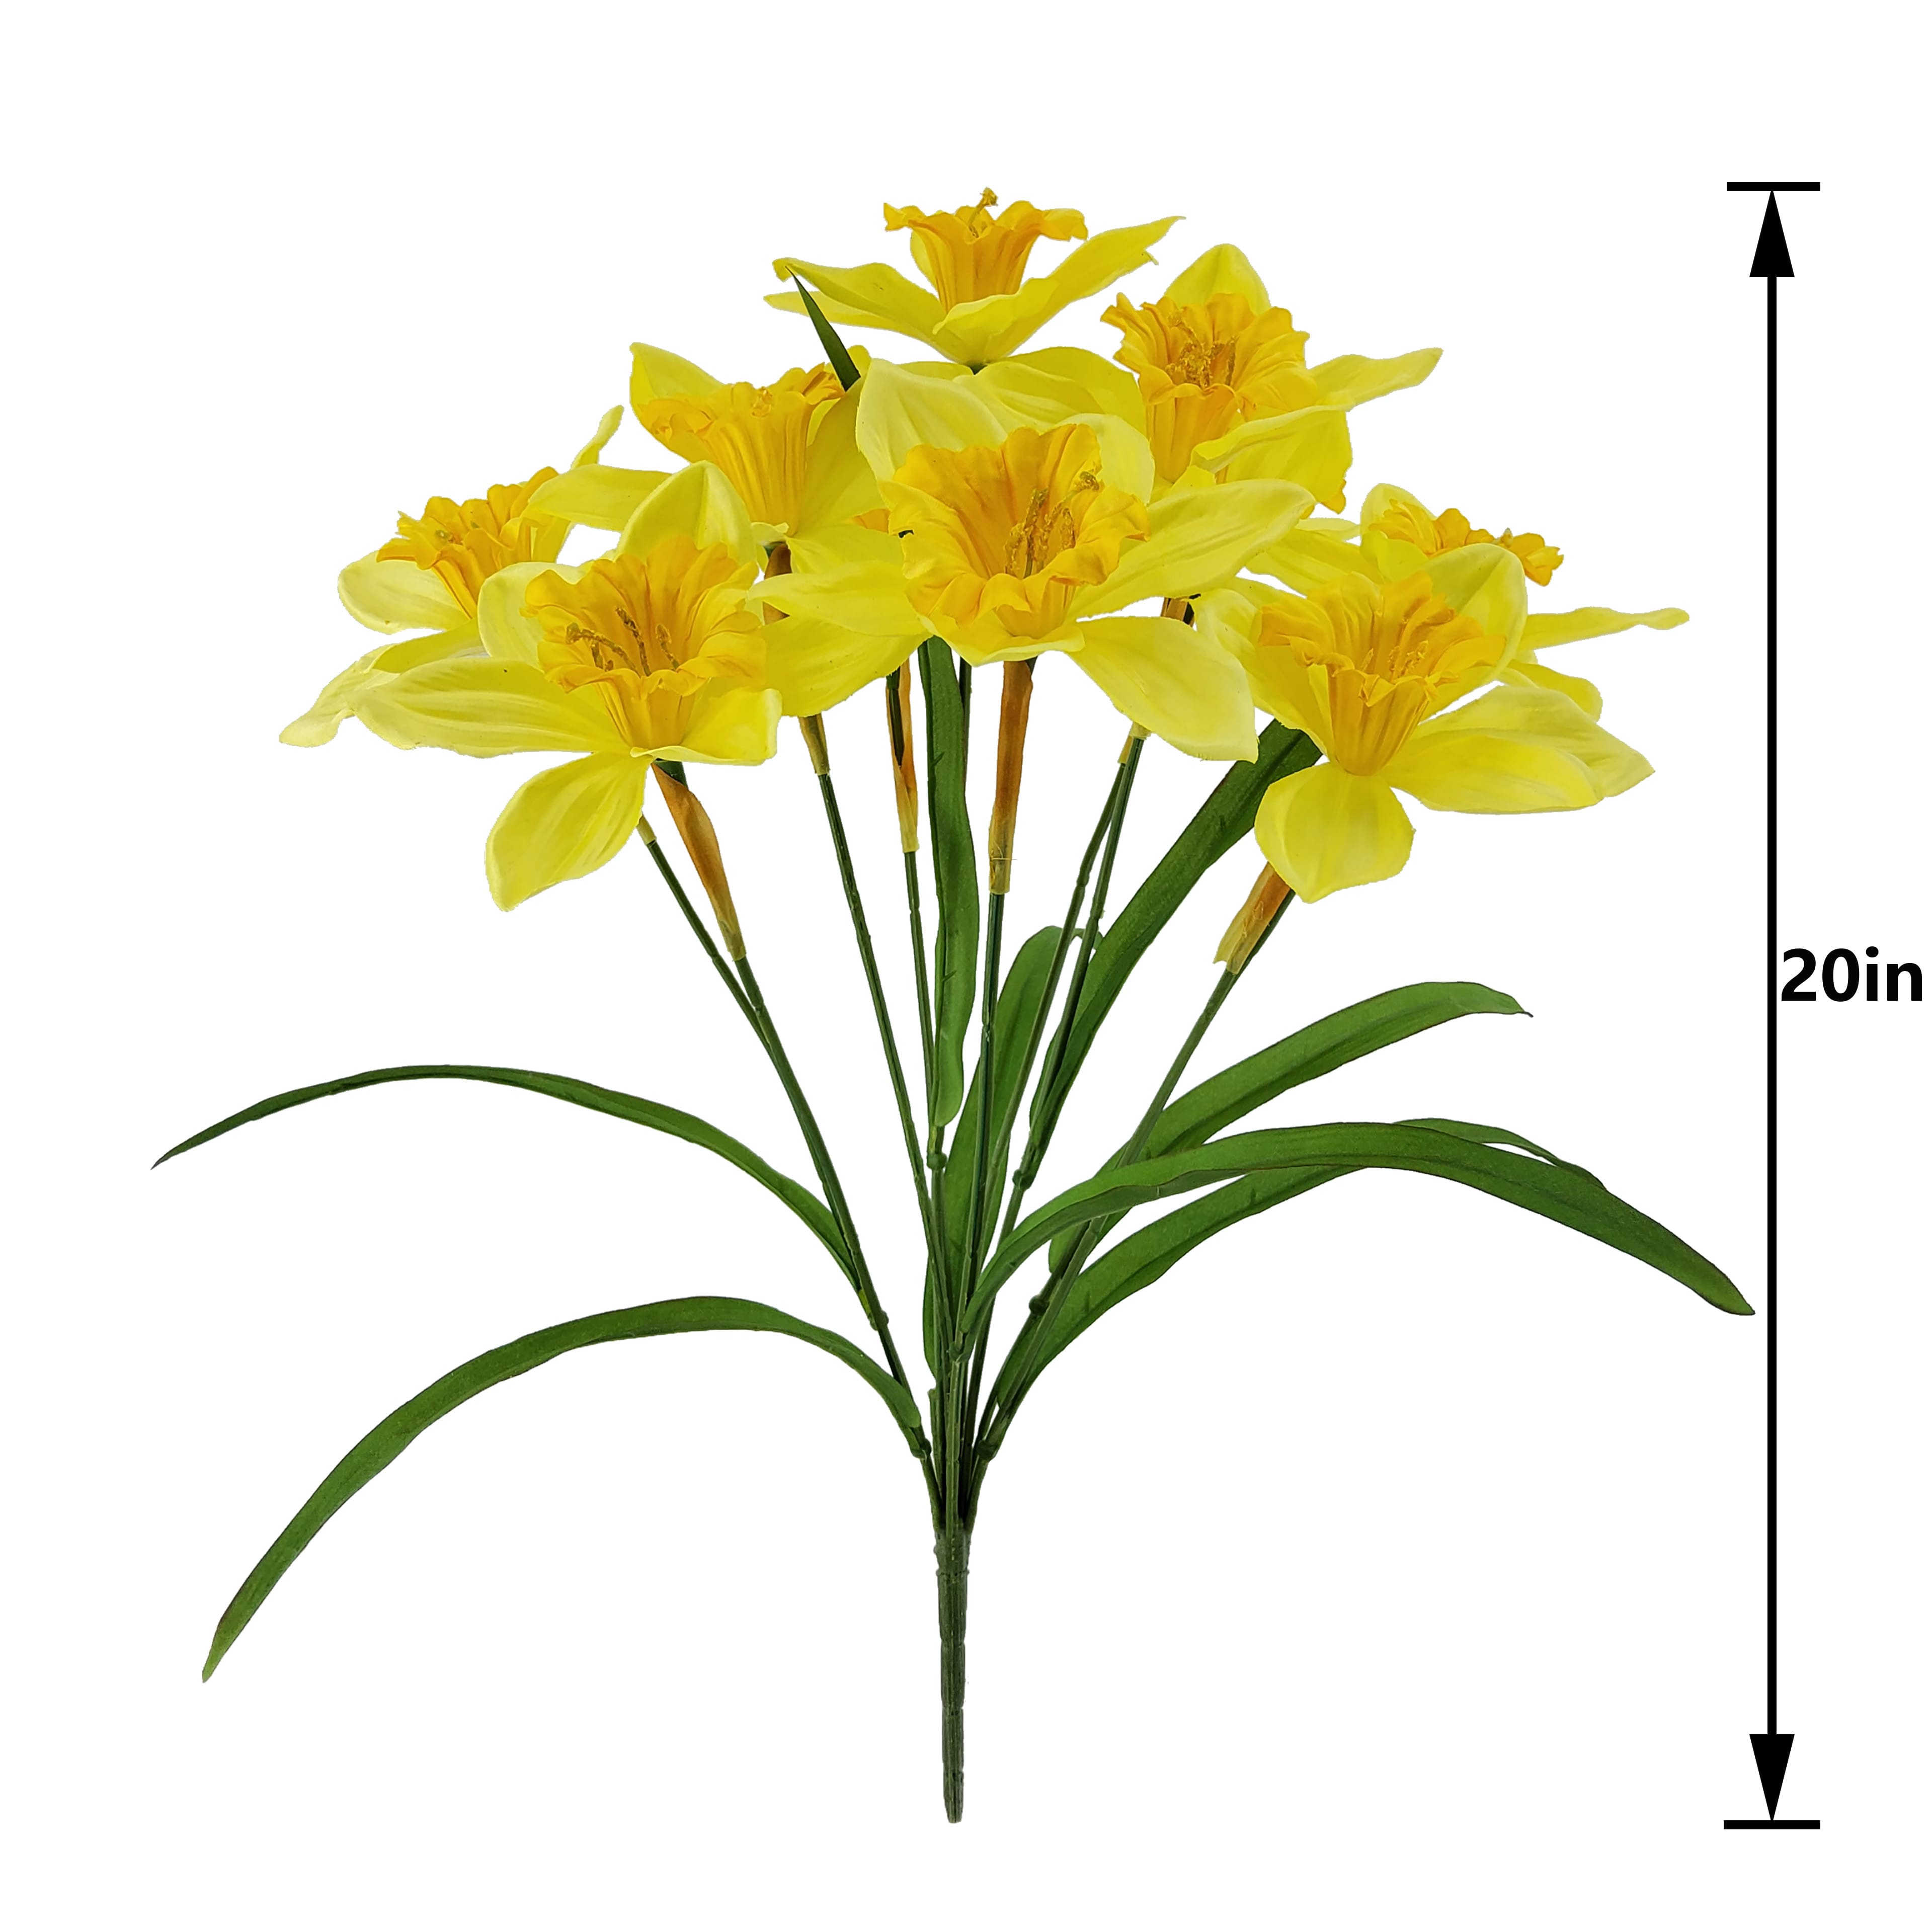 Yellow Daffodil Bush by Ashland&#xAE;